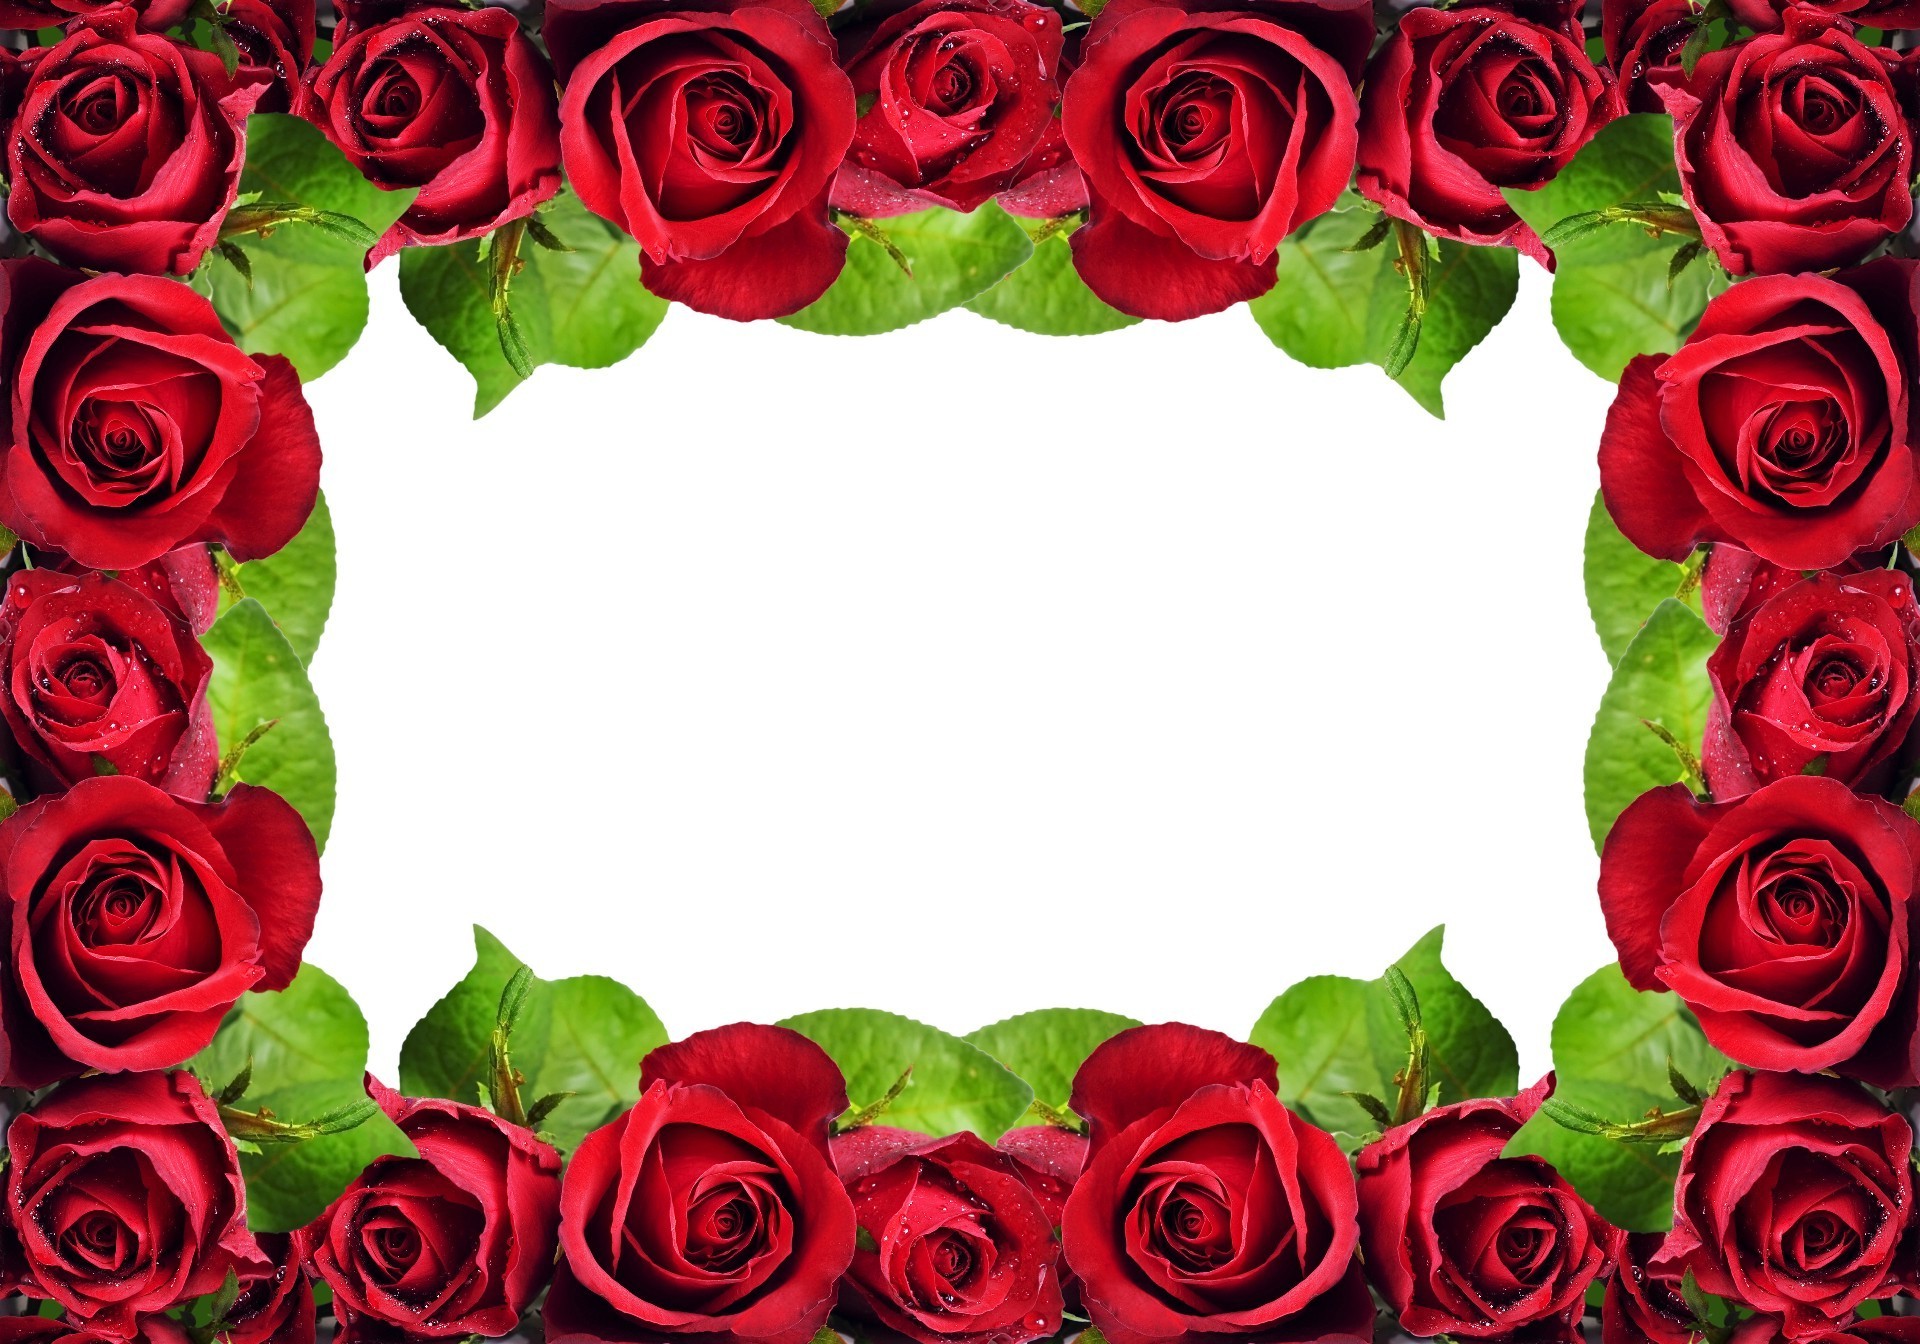 праздники роза романтика любовь цветочные букет лепесток цветок свадьба юбилей романтический брак лист блюминг подарок флора кластер элегантный украшения дружище день рождения